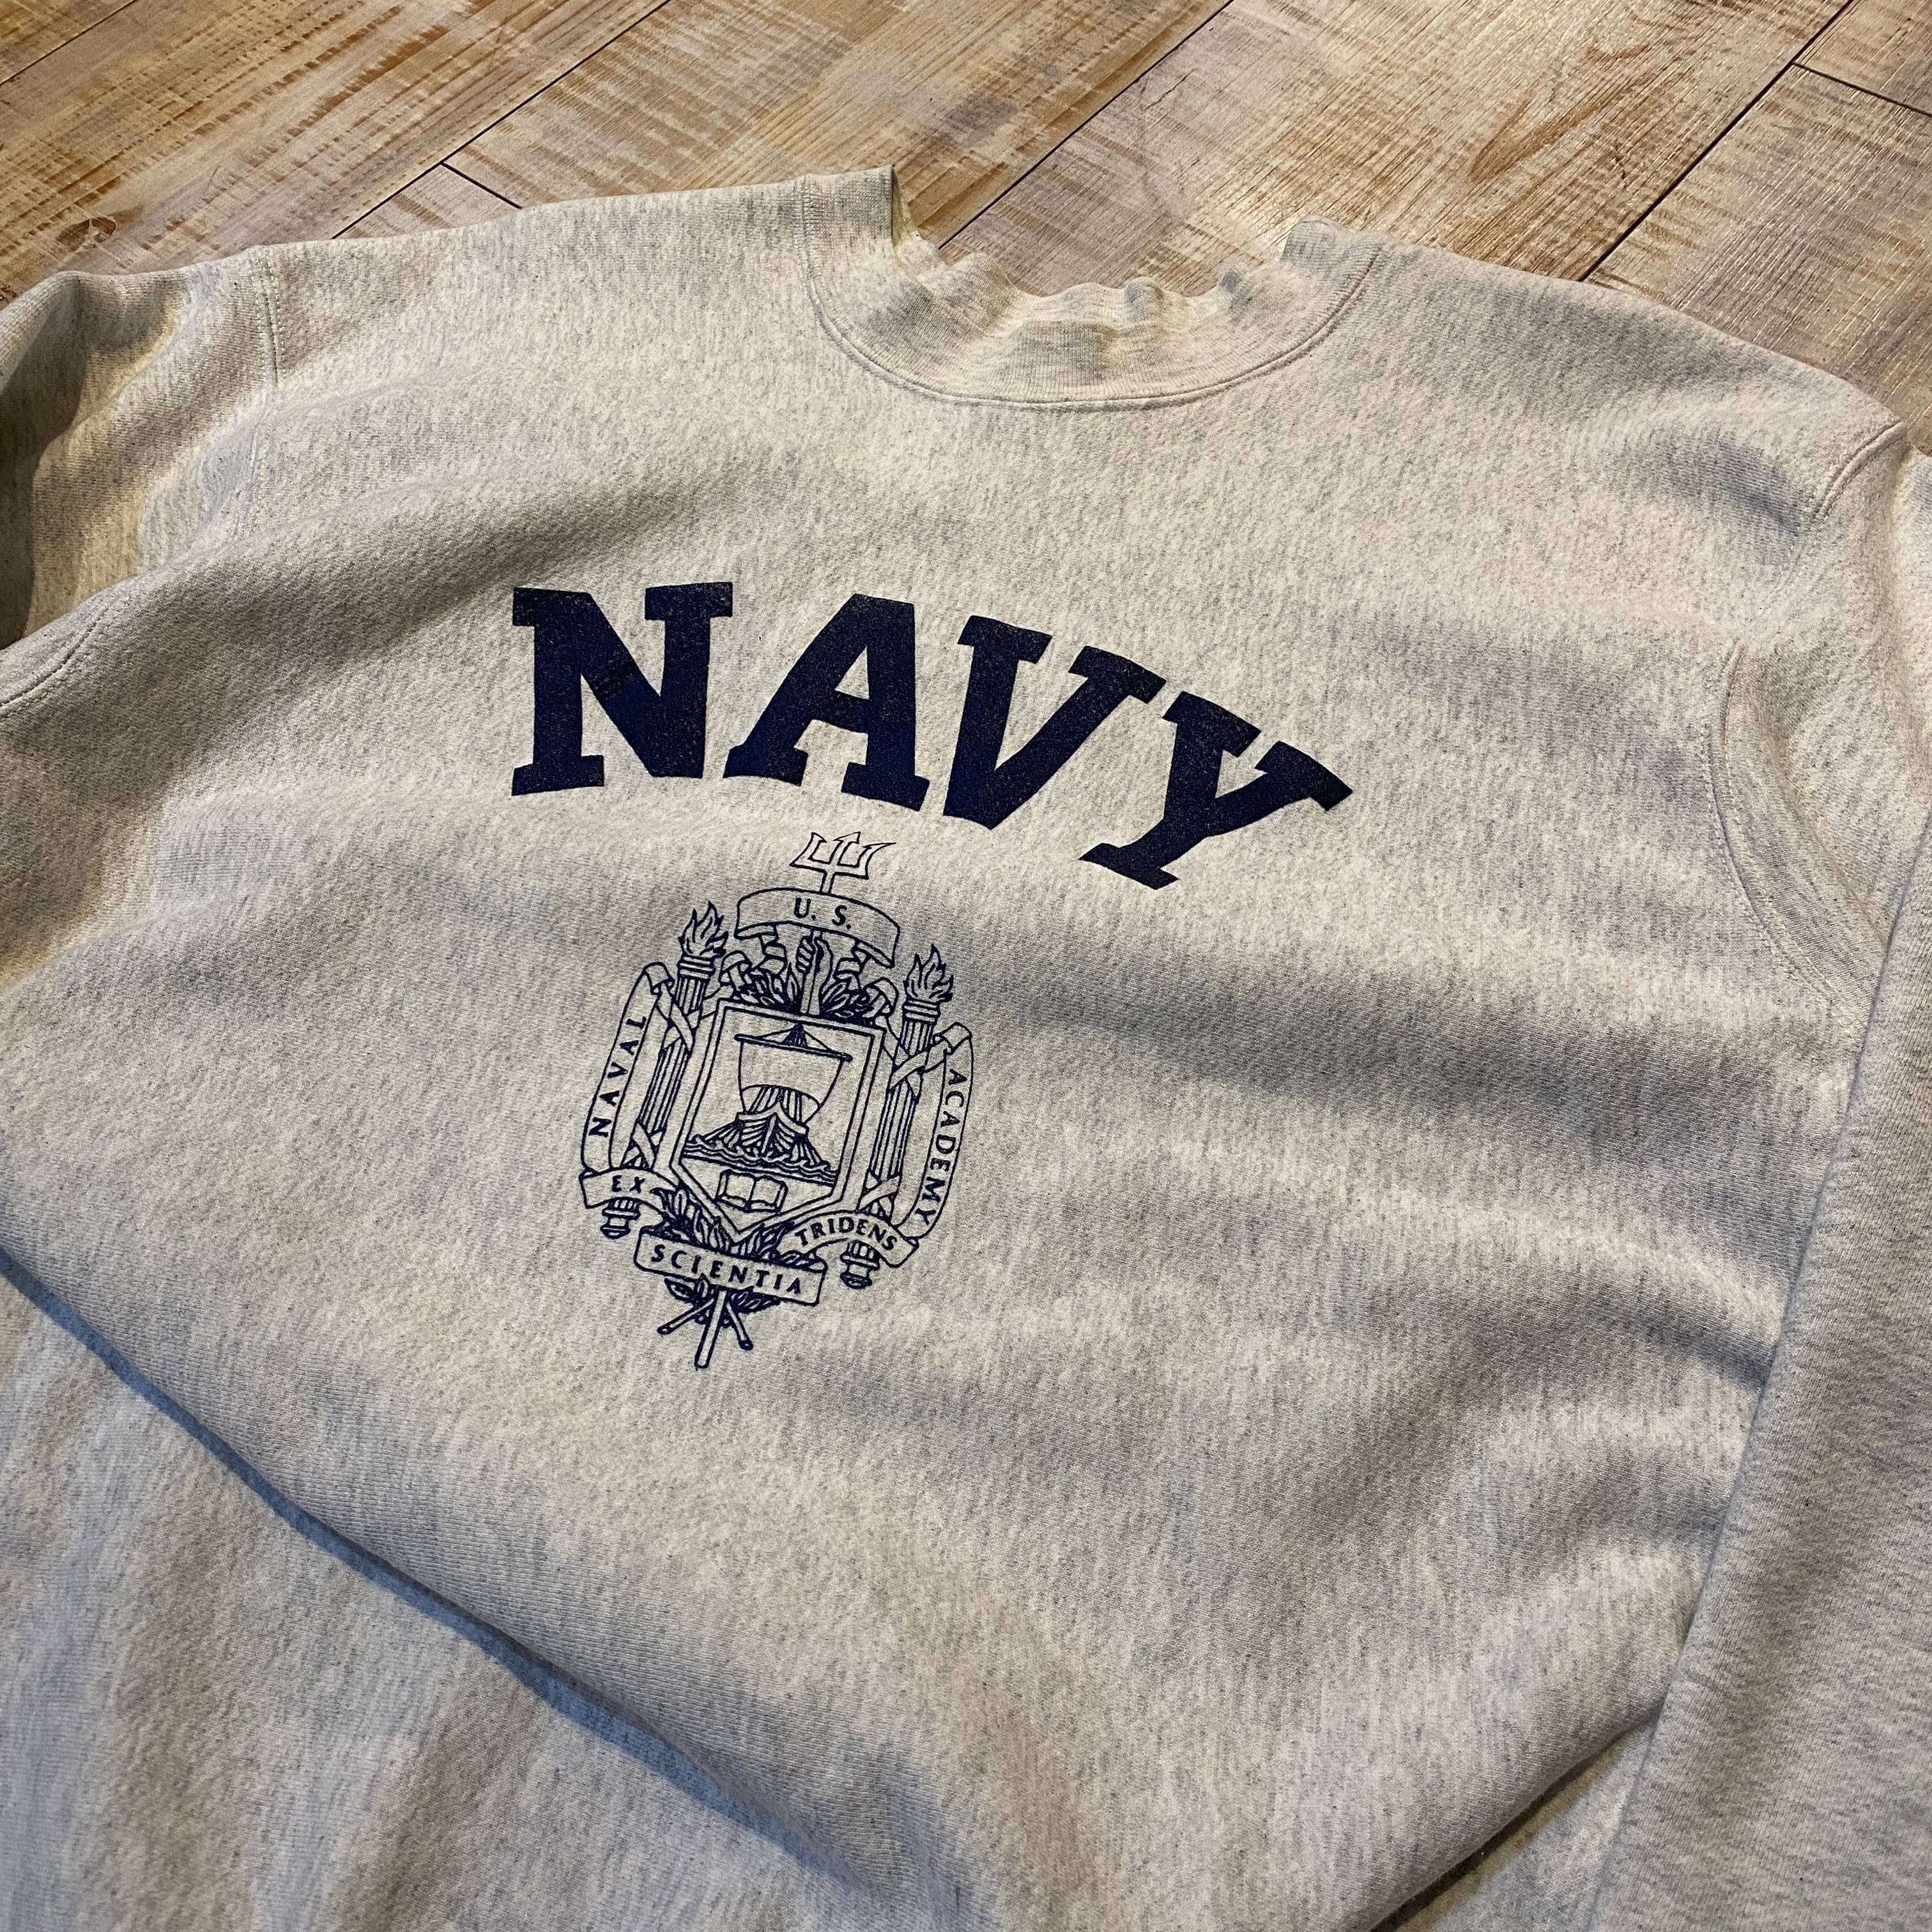 U.S. Naval Academy 90s NAVY ネイビー スウェット